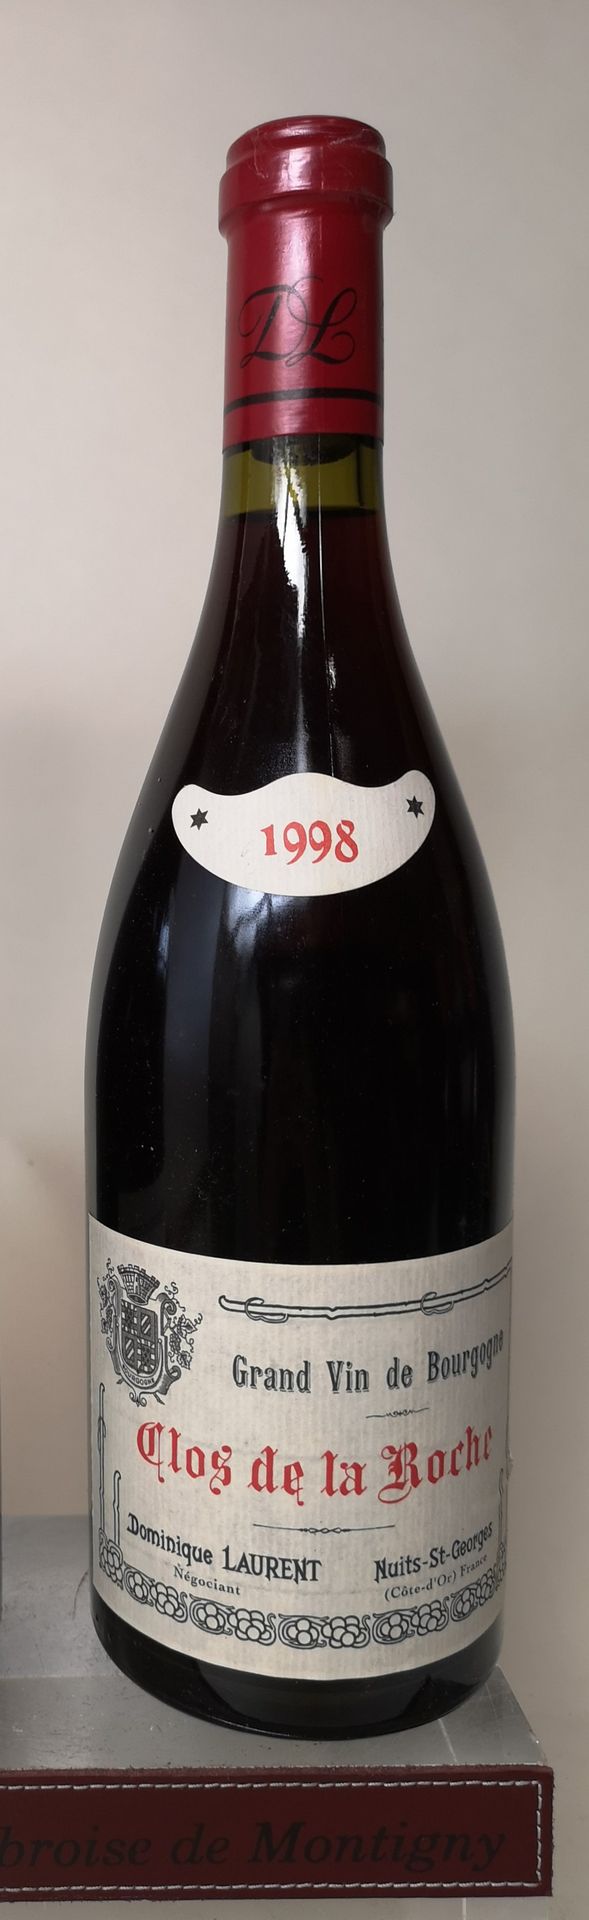 Null 
1 bottle CLOS de la ROCHE Grand cru - Dominique LAURENT 1998

LOT SOLD ON &hellip;